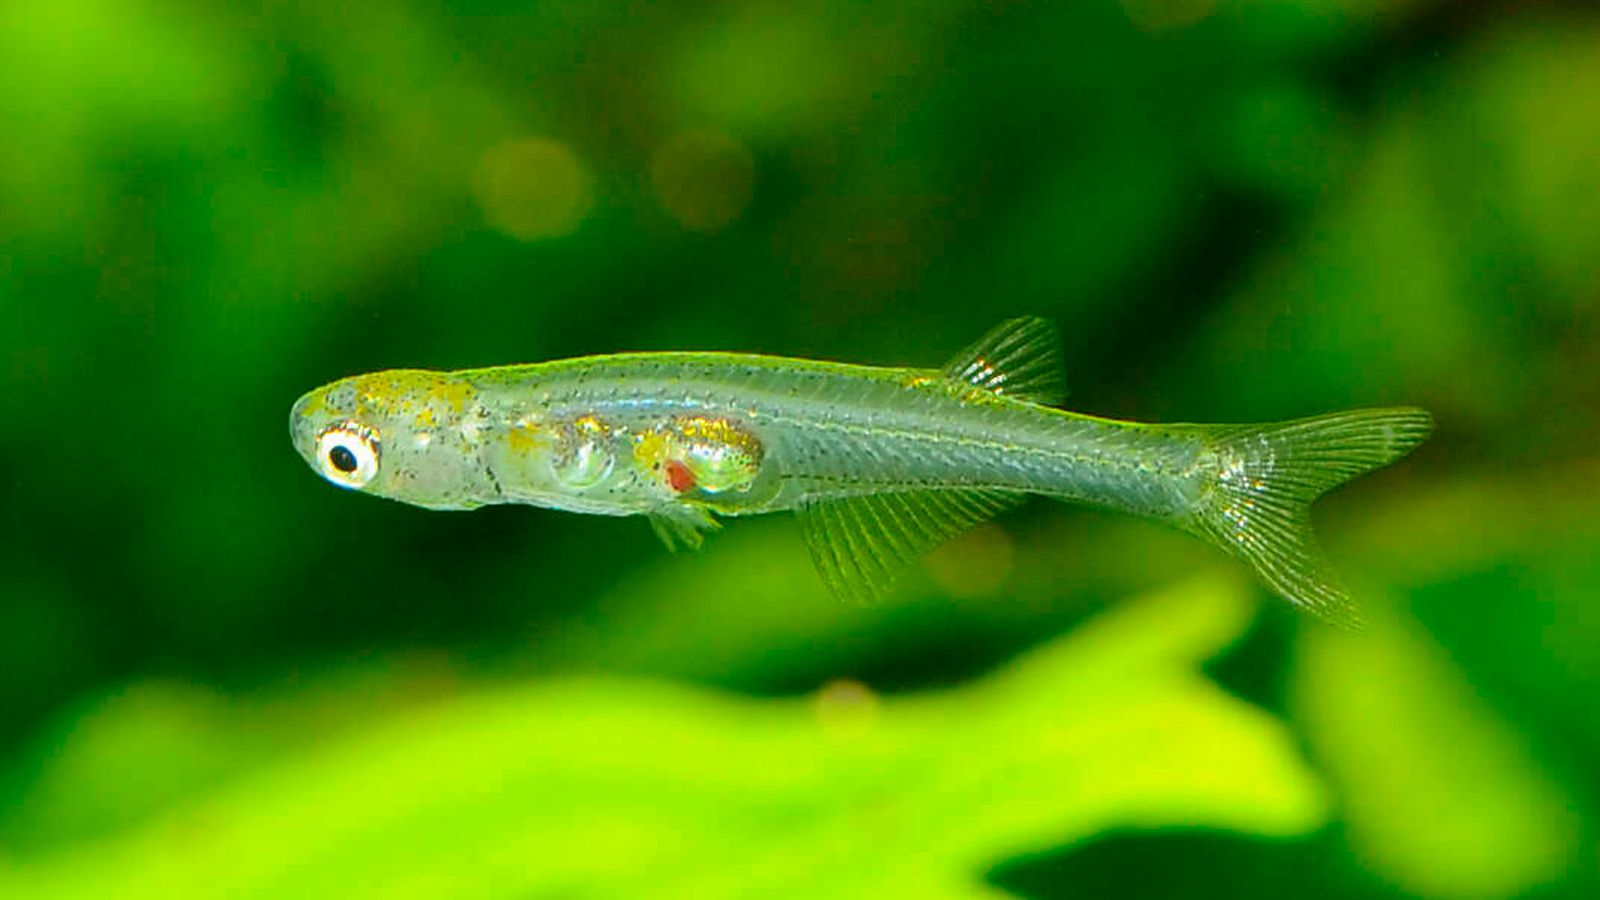 Araştırmacılar, küçük balıkların pnömatik matkabın çıkardığı sese benzer sesler üretebildiğini buldu